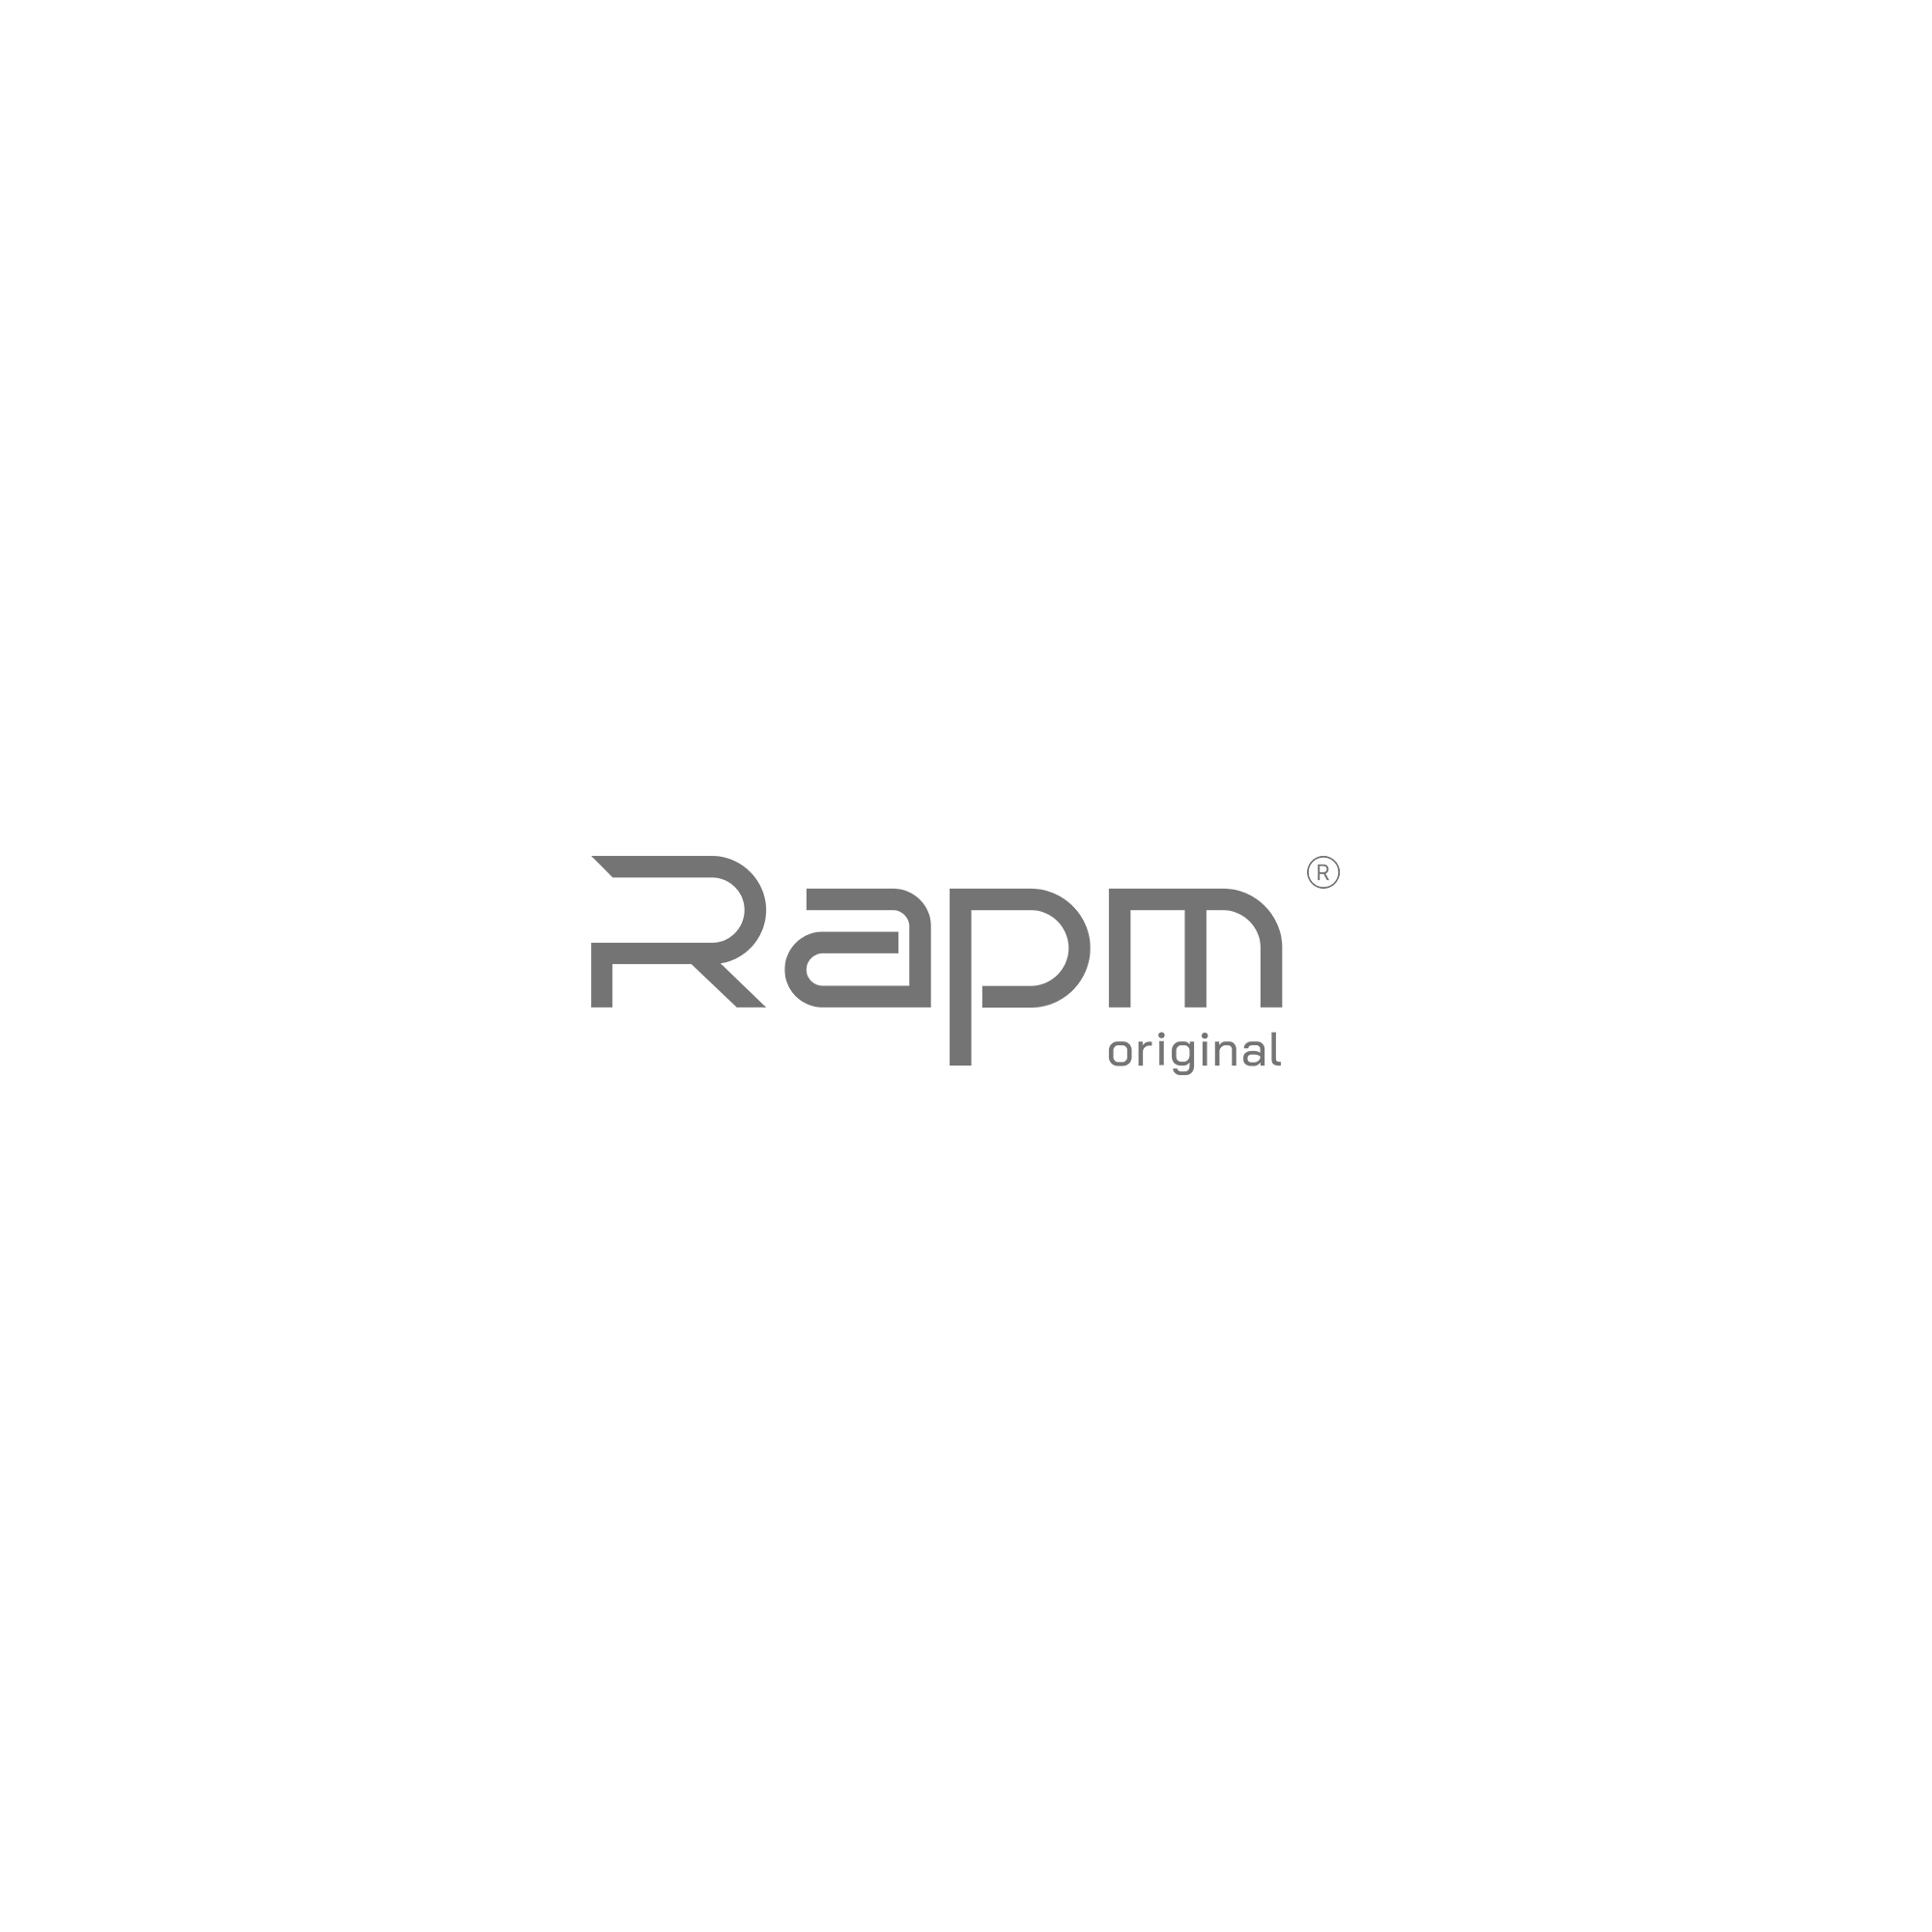 Новый дизайн упаковки и логотип для бренда RAPM 